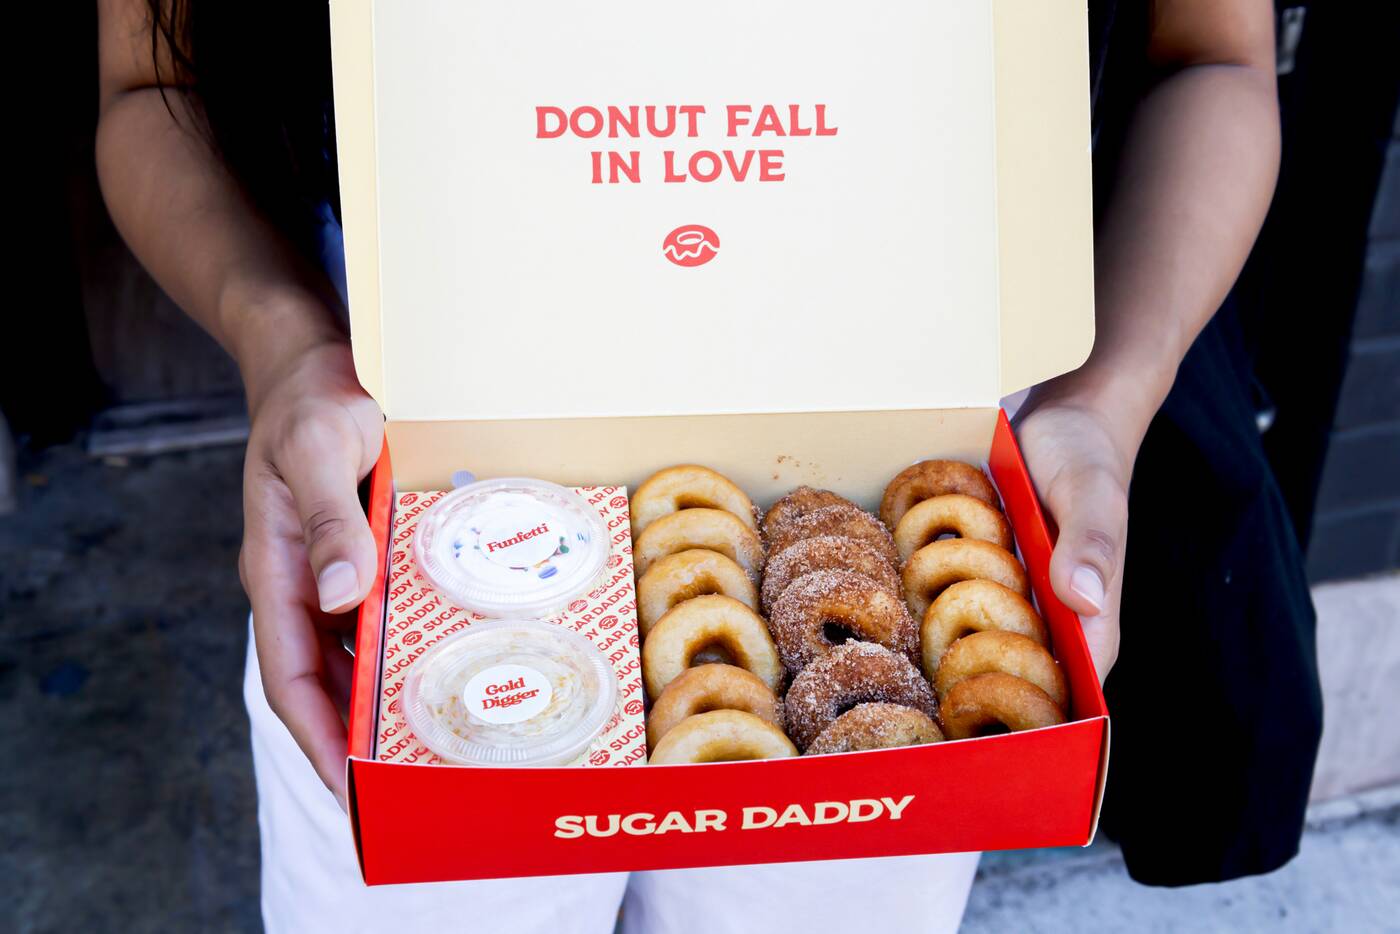 sugar daddy doughnuts